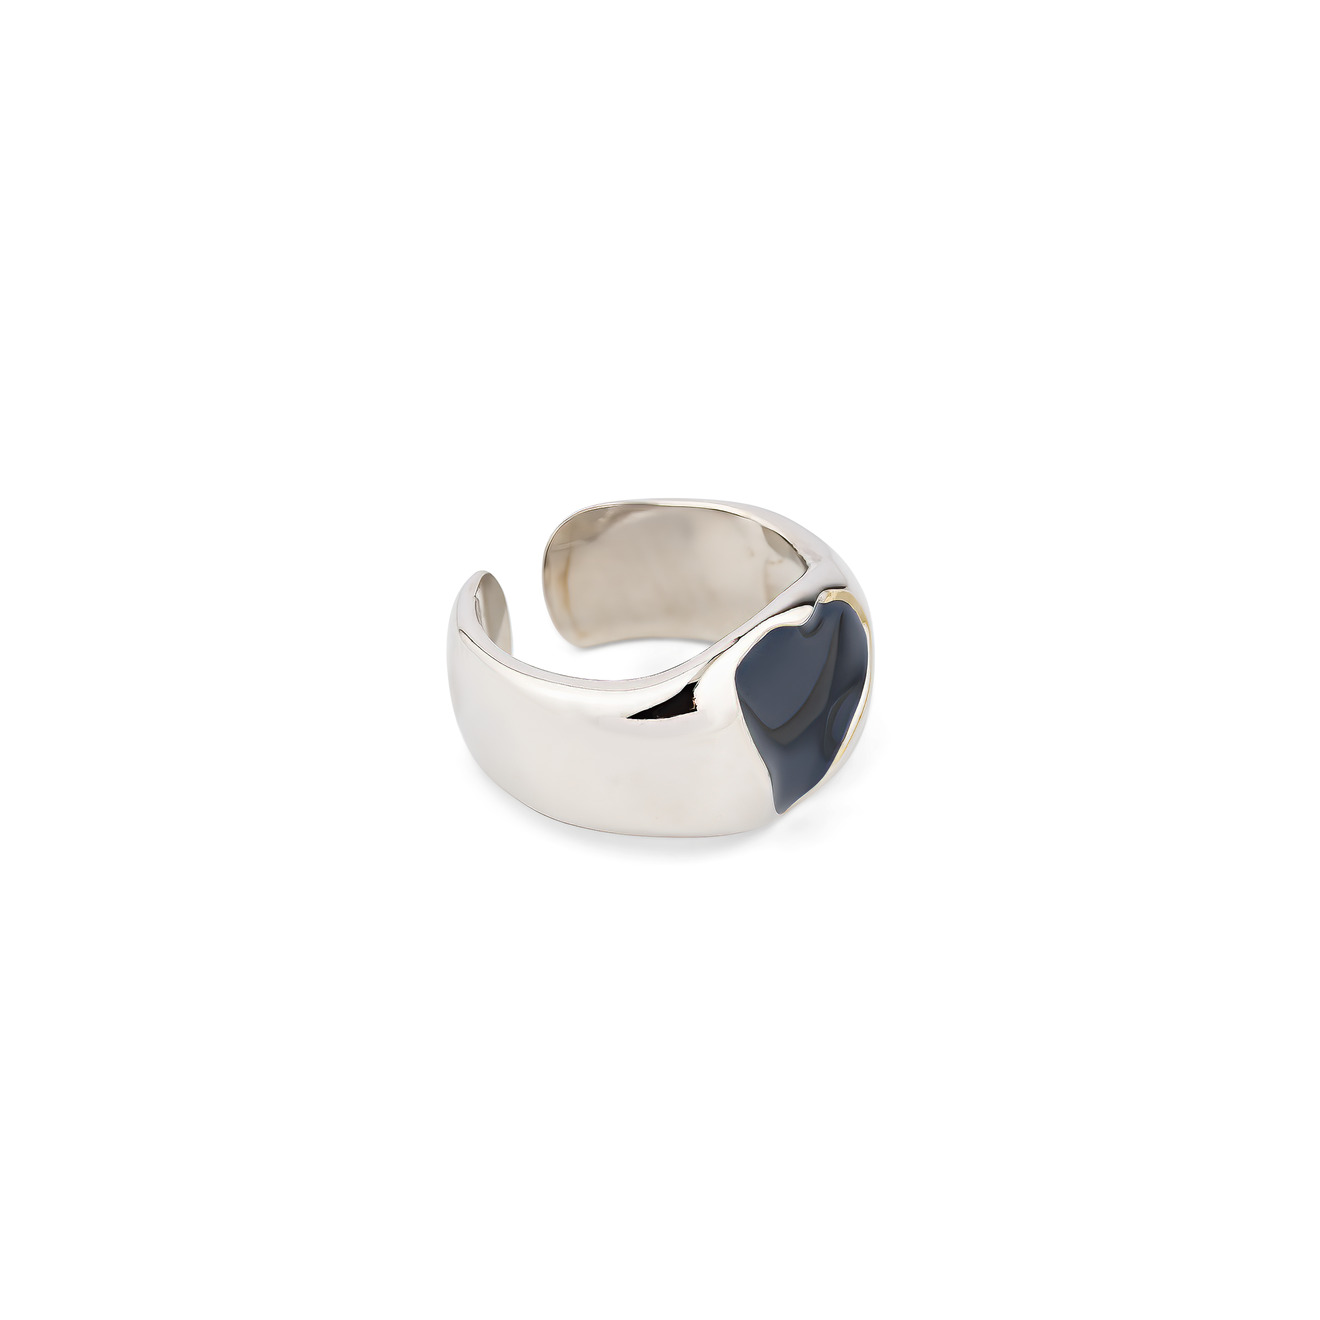 Free Form Jewelry Кольцо серебристое с черным сердечком free form jewelry серебристое двойное кольцо с бантиком и кристаллами